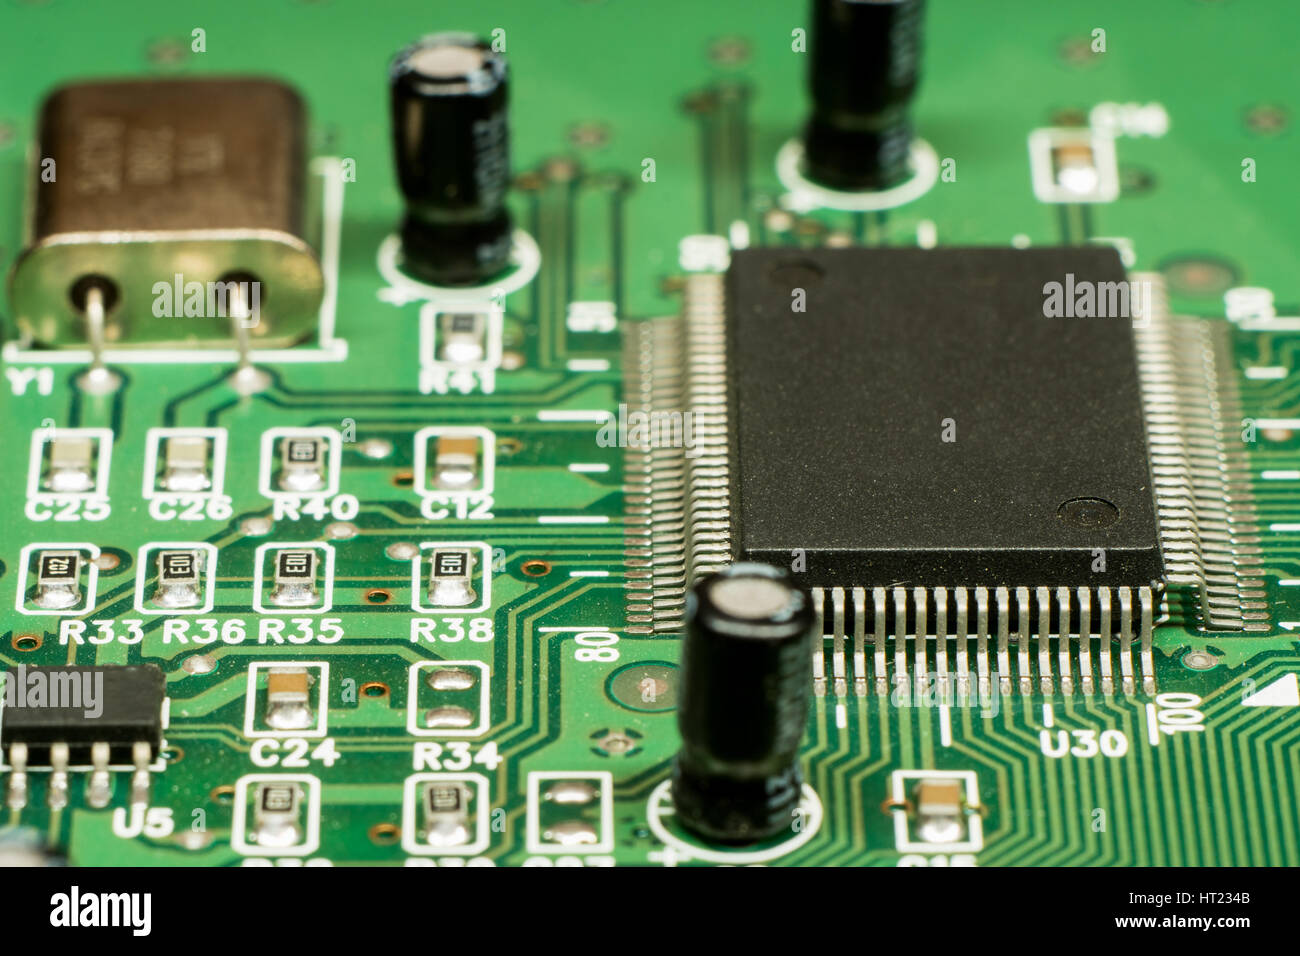 Placa de circuitos electrónicos impresos SMD con micro controlador y oscilador de cristal Foto de stock